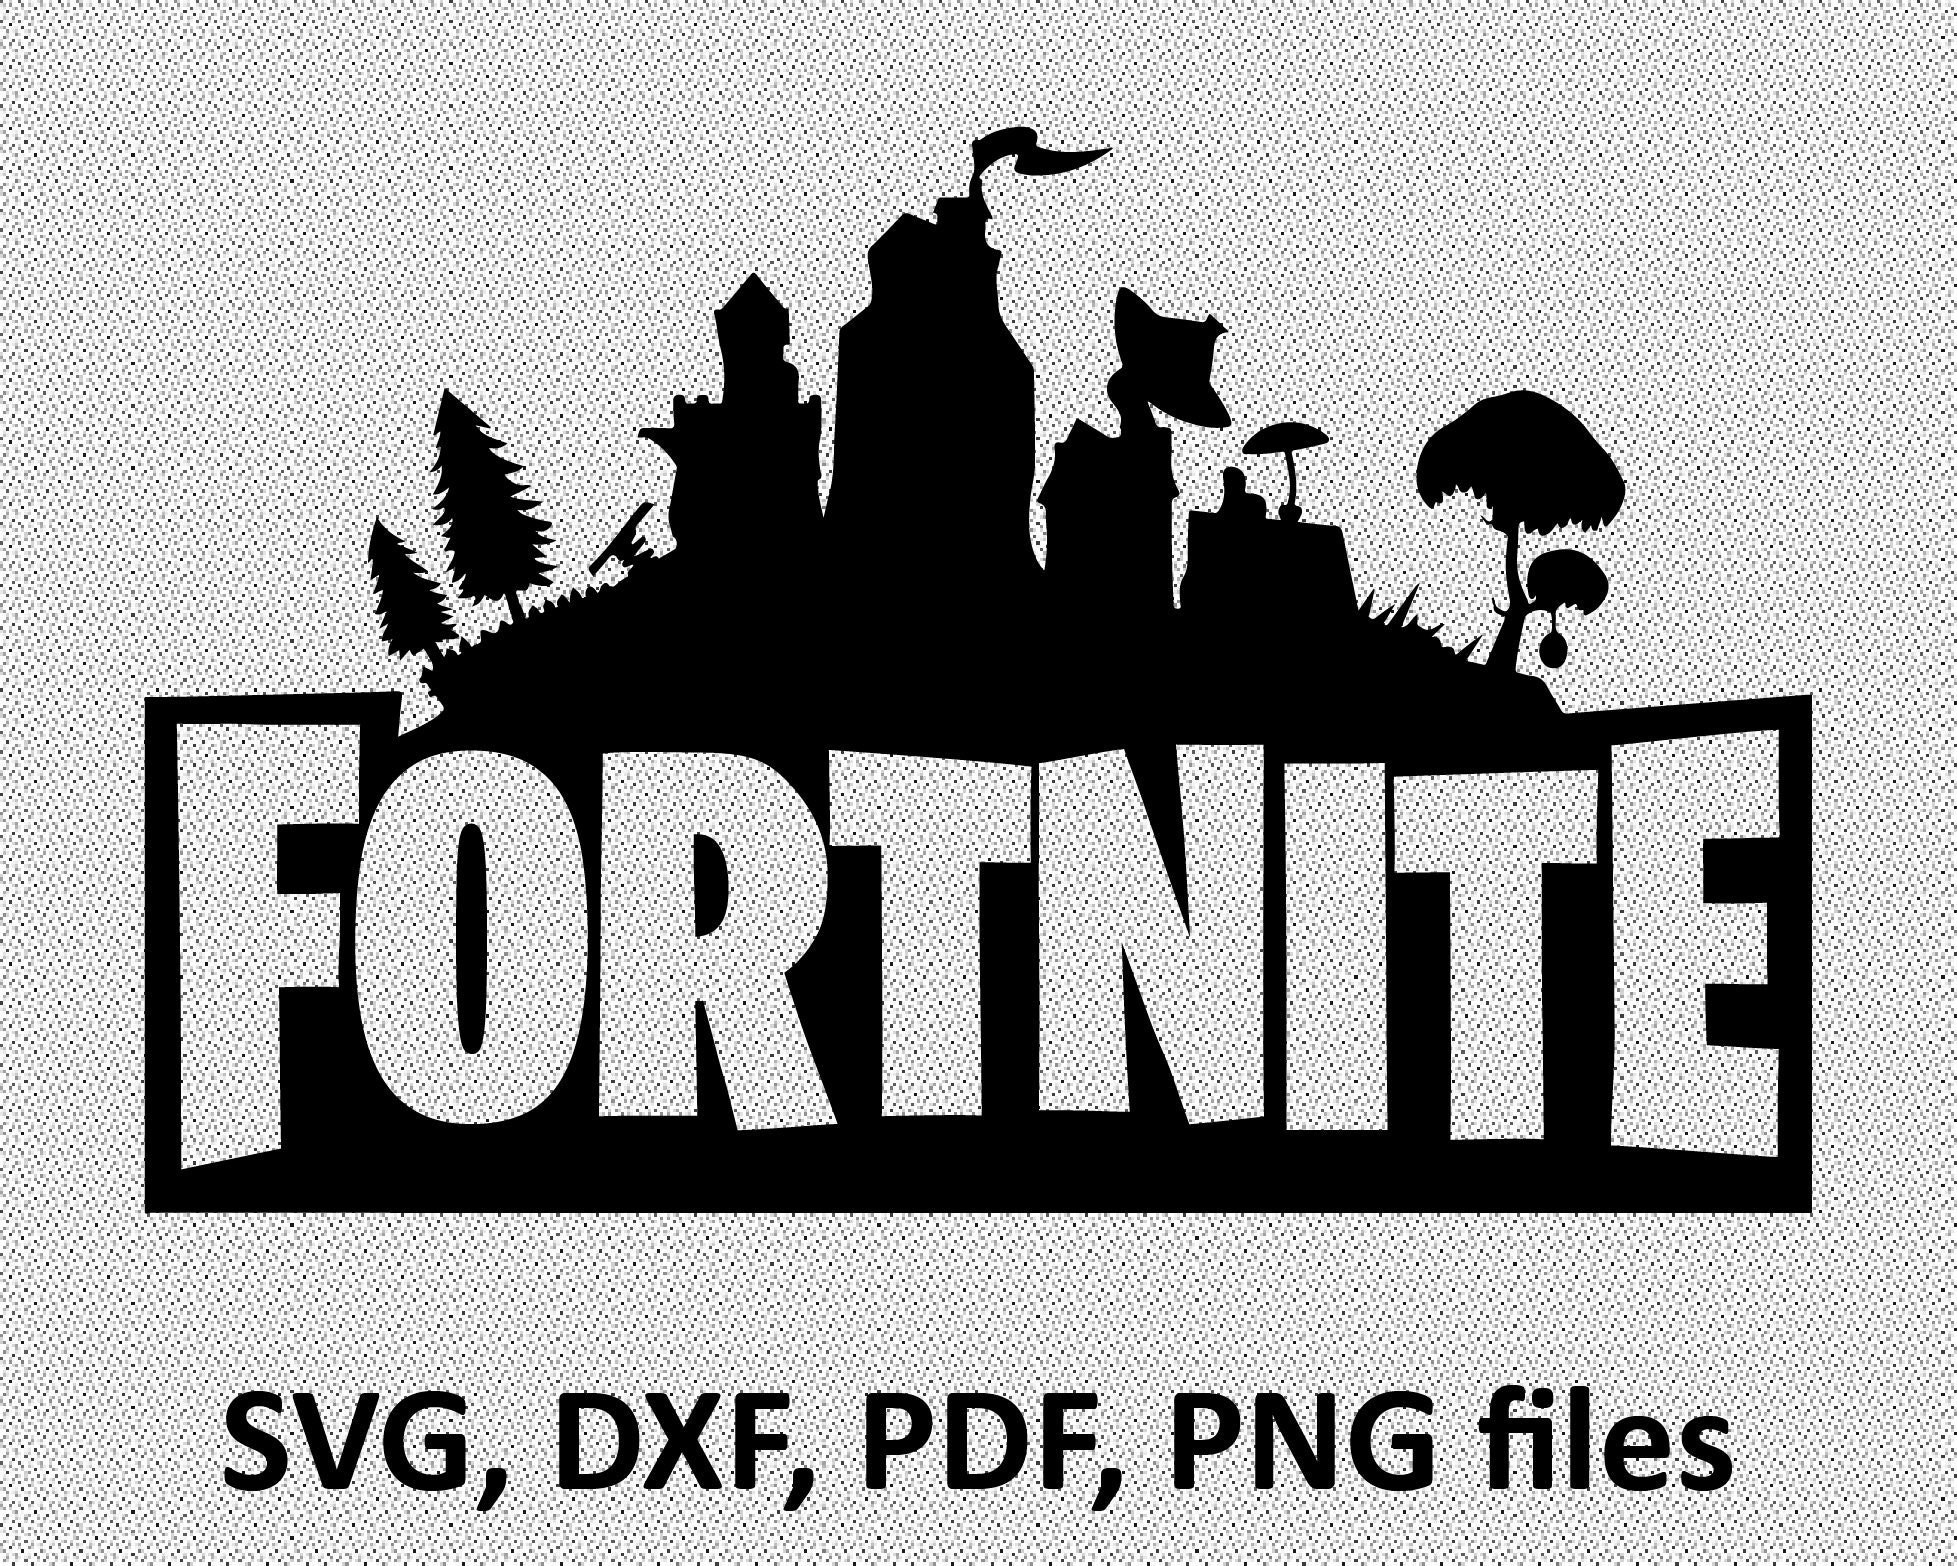 Download Fortnite SVG File Fortnite logo pdf DXF PNG Cut File | Etsy